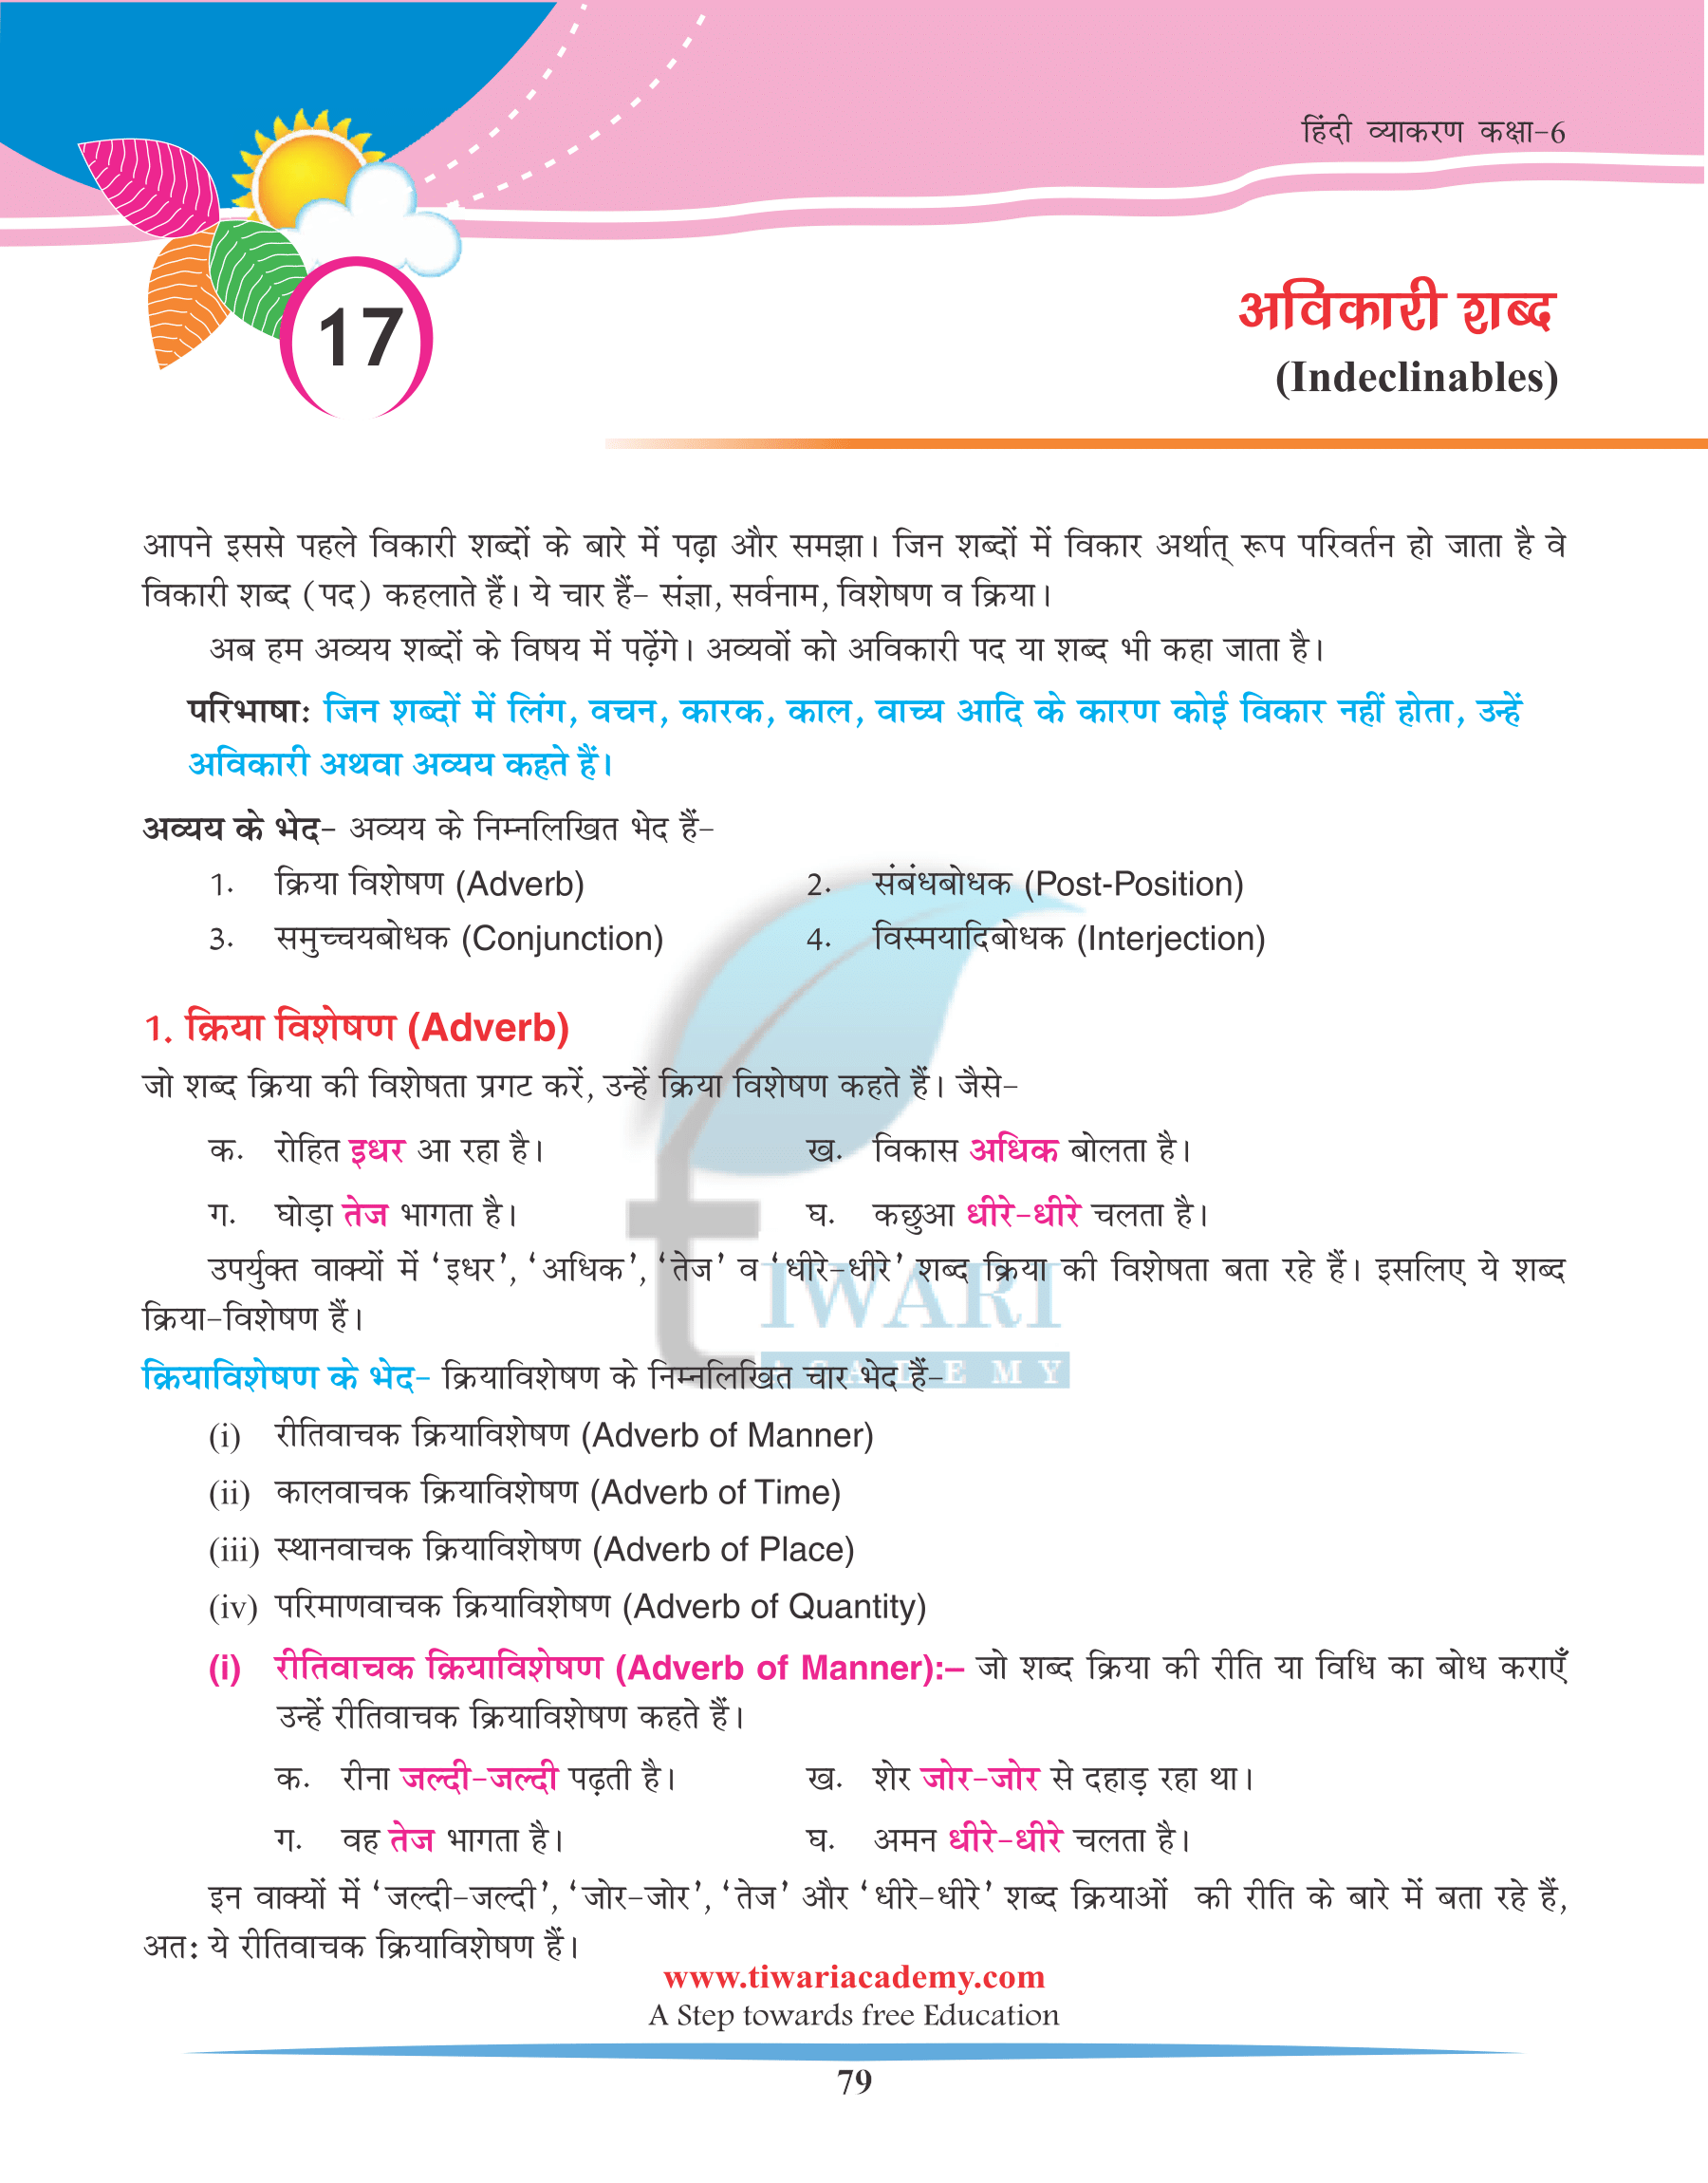 Class 6 Hindi Grammar Chapter 17 Avikari Shabd ke Bhed